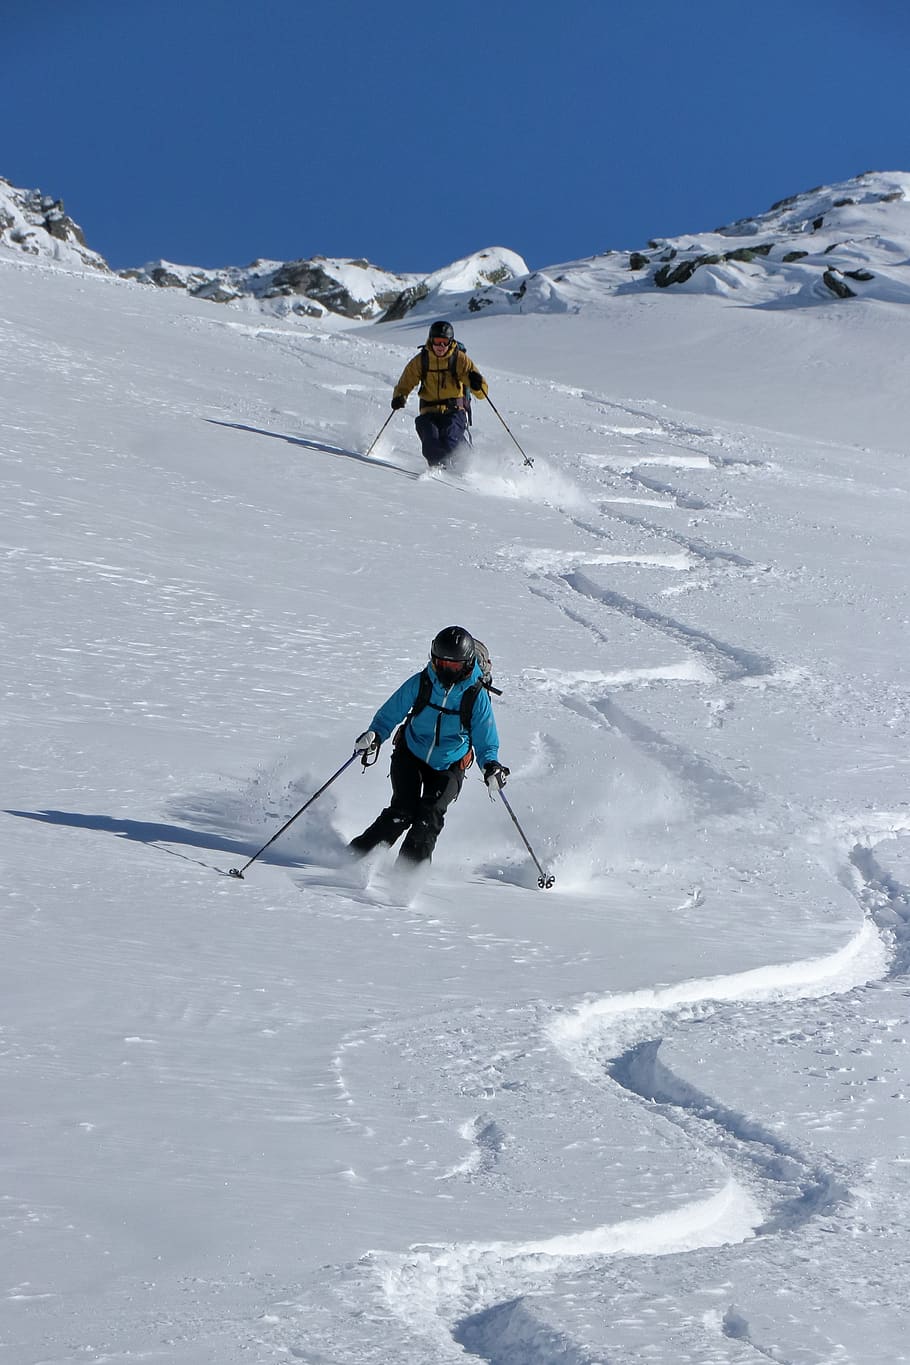 ski, salju, musim dingin, salju tebal, keberangkatan, ski pedalaman, suhu dingin, gunung, kegiatan rekreasi, olahraga